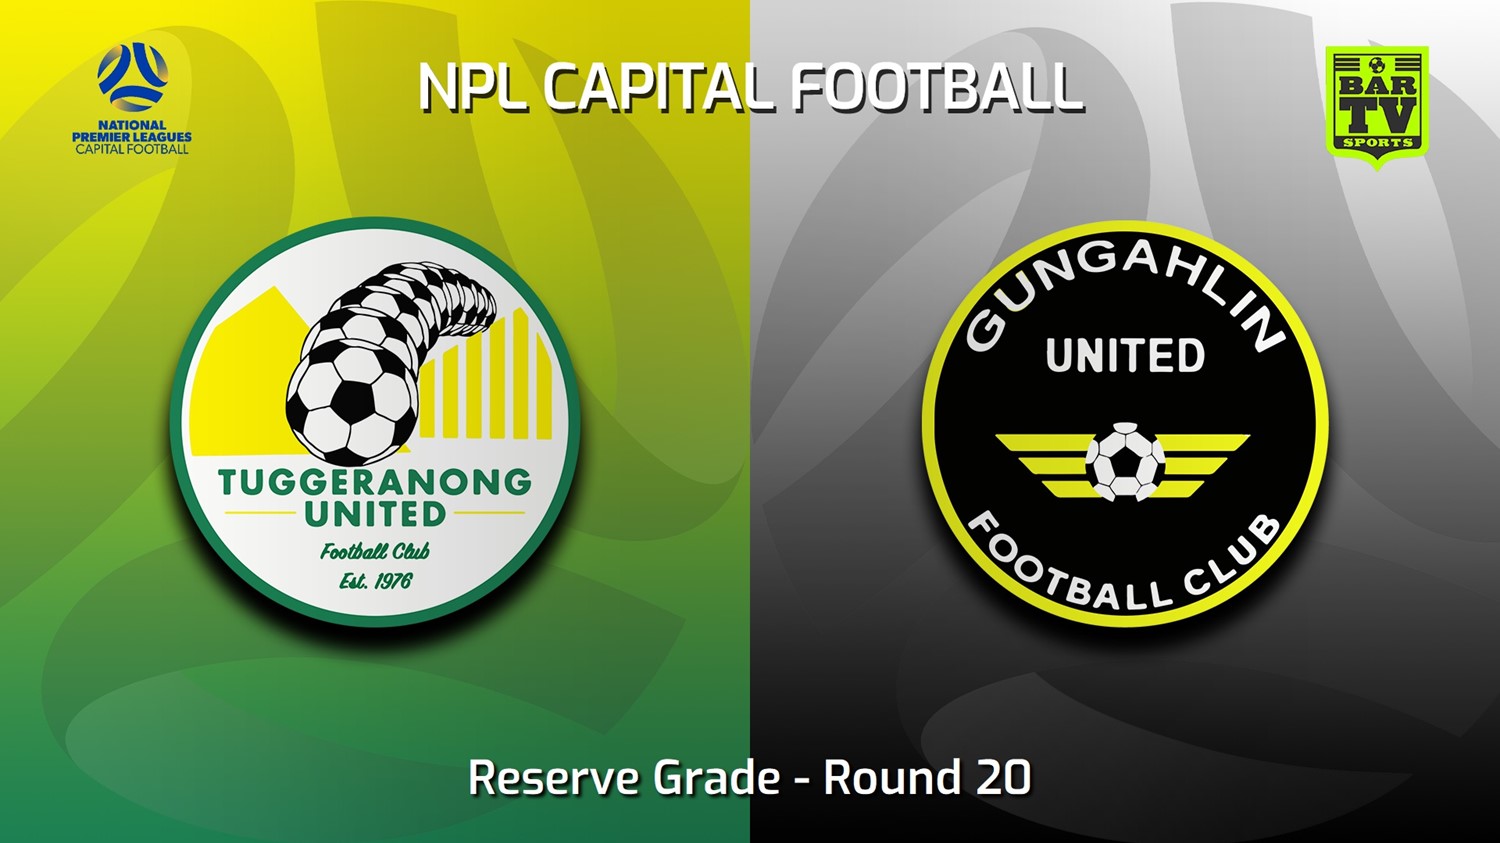 230827-NPL Women - Reserve Grade - Capital Football Round 20 - Tuggeranong United FC (women) v Gungahlin United FC (women) Slate Image